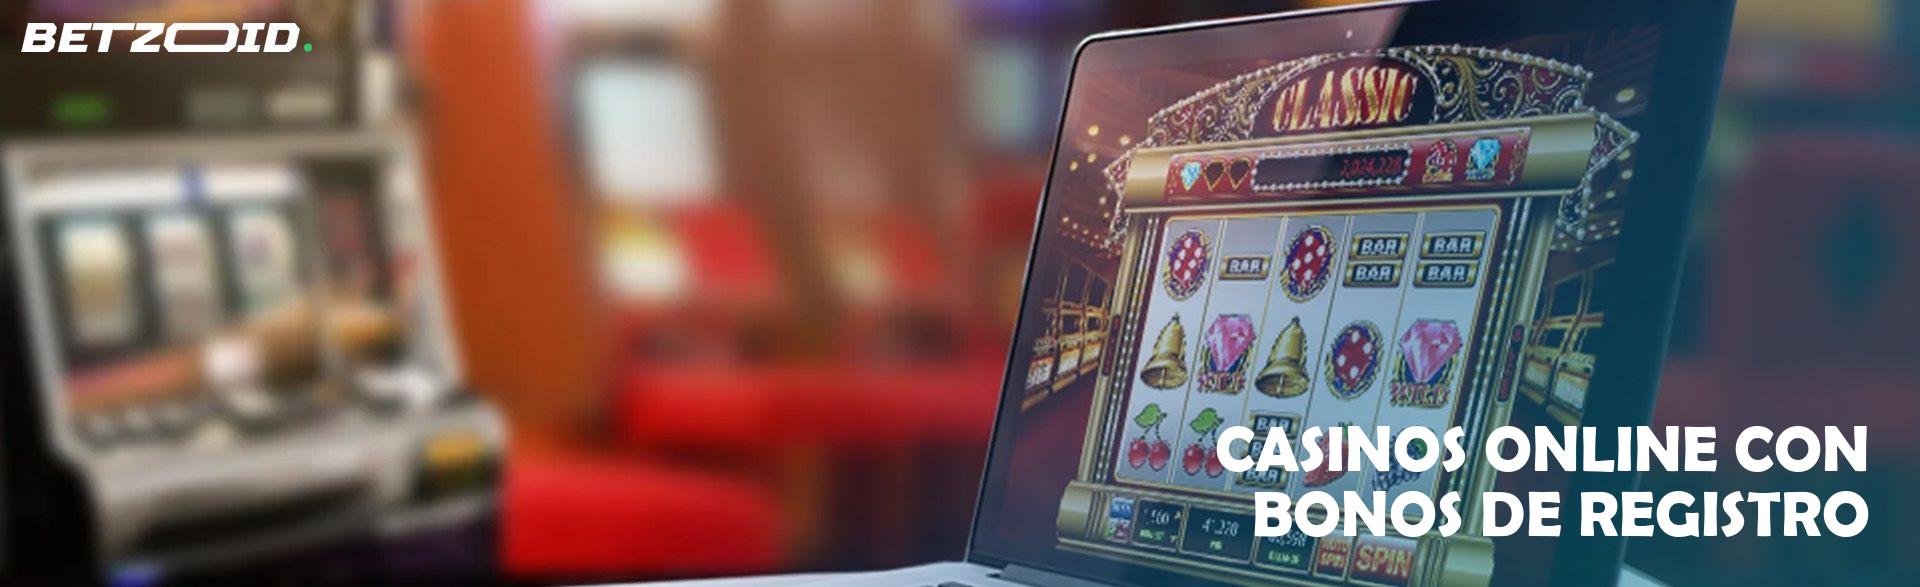 Casinos Online con Bonos de Registro.